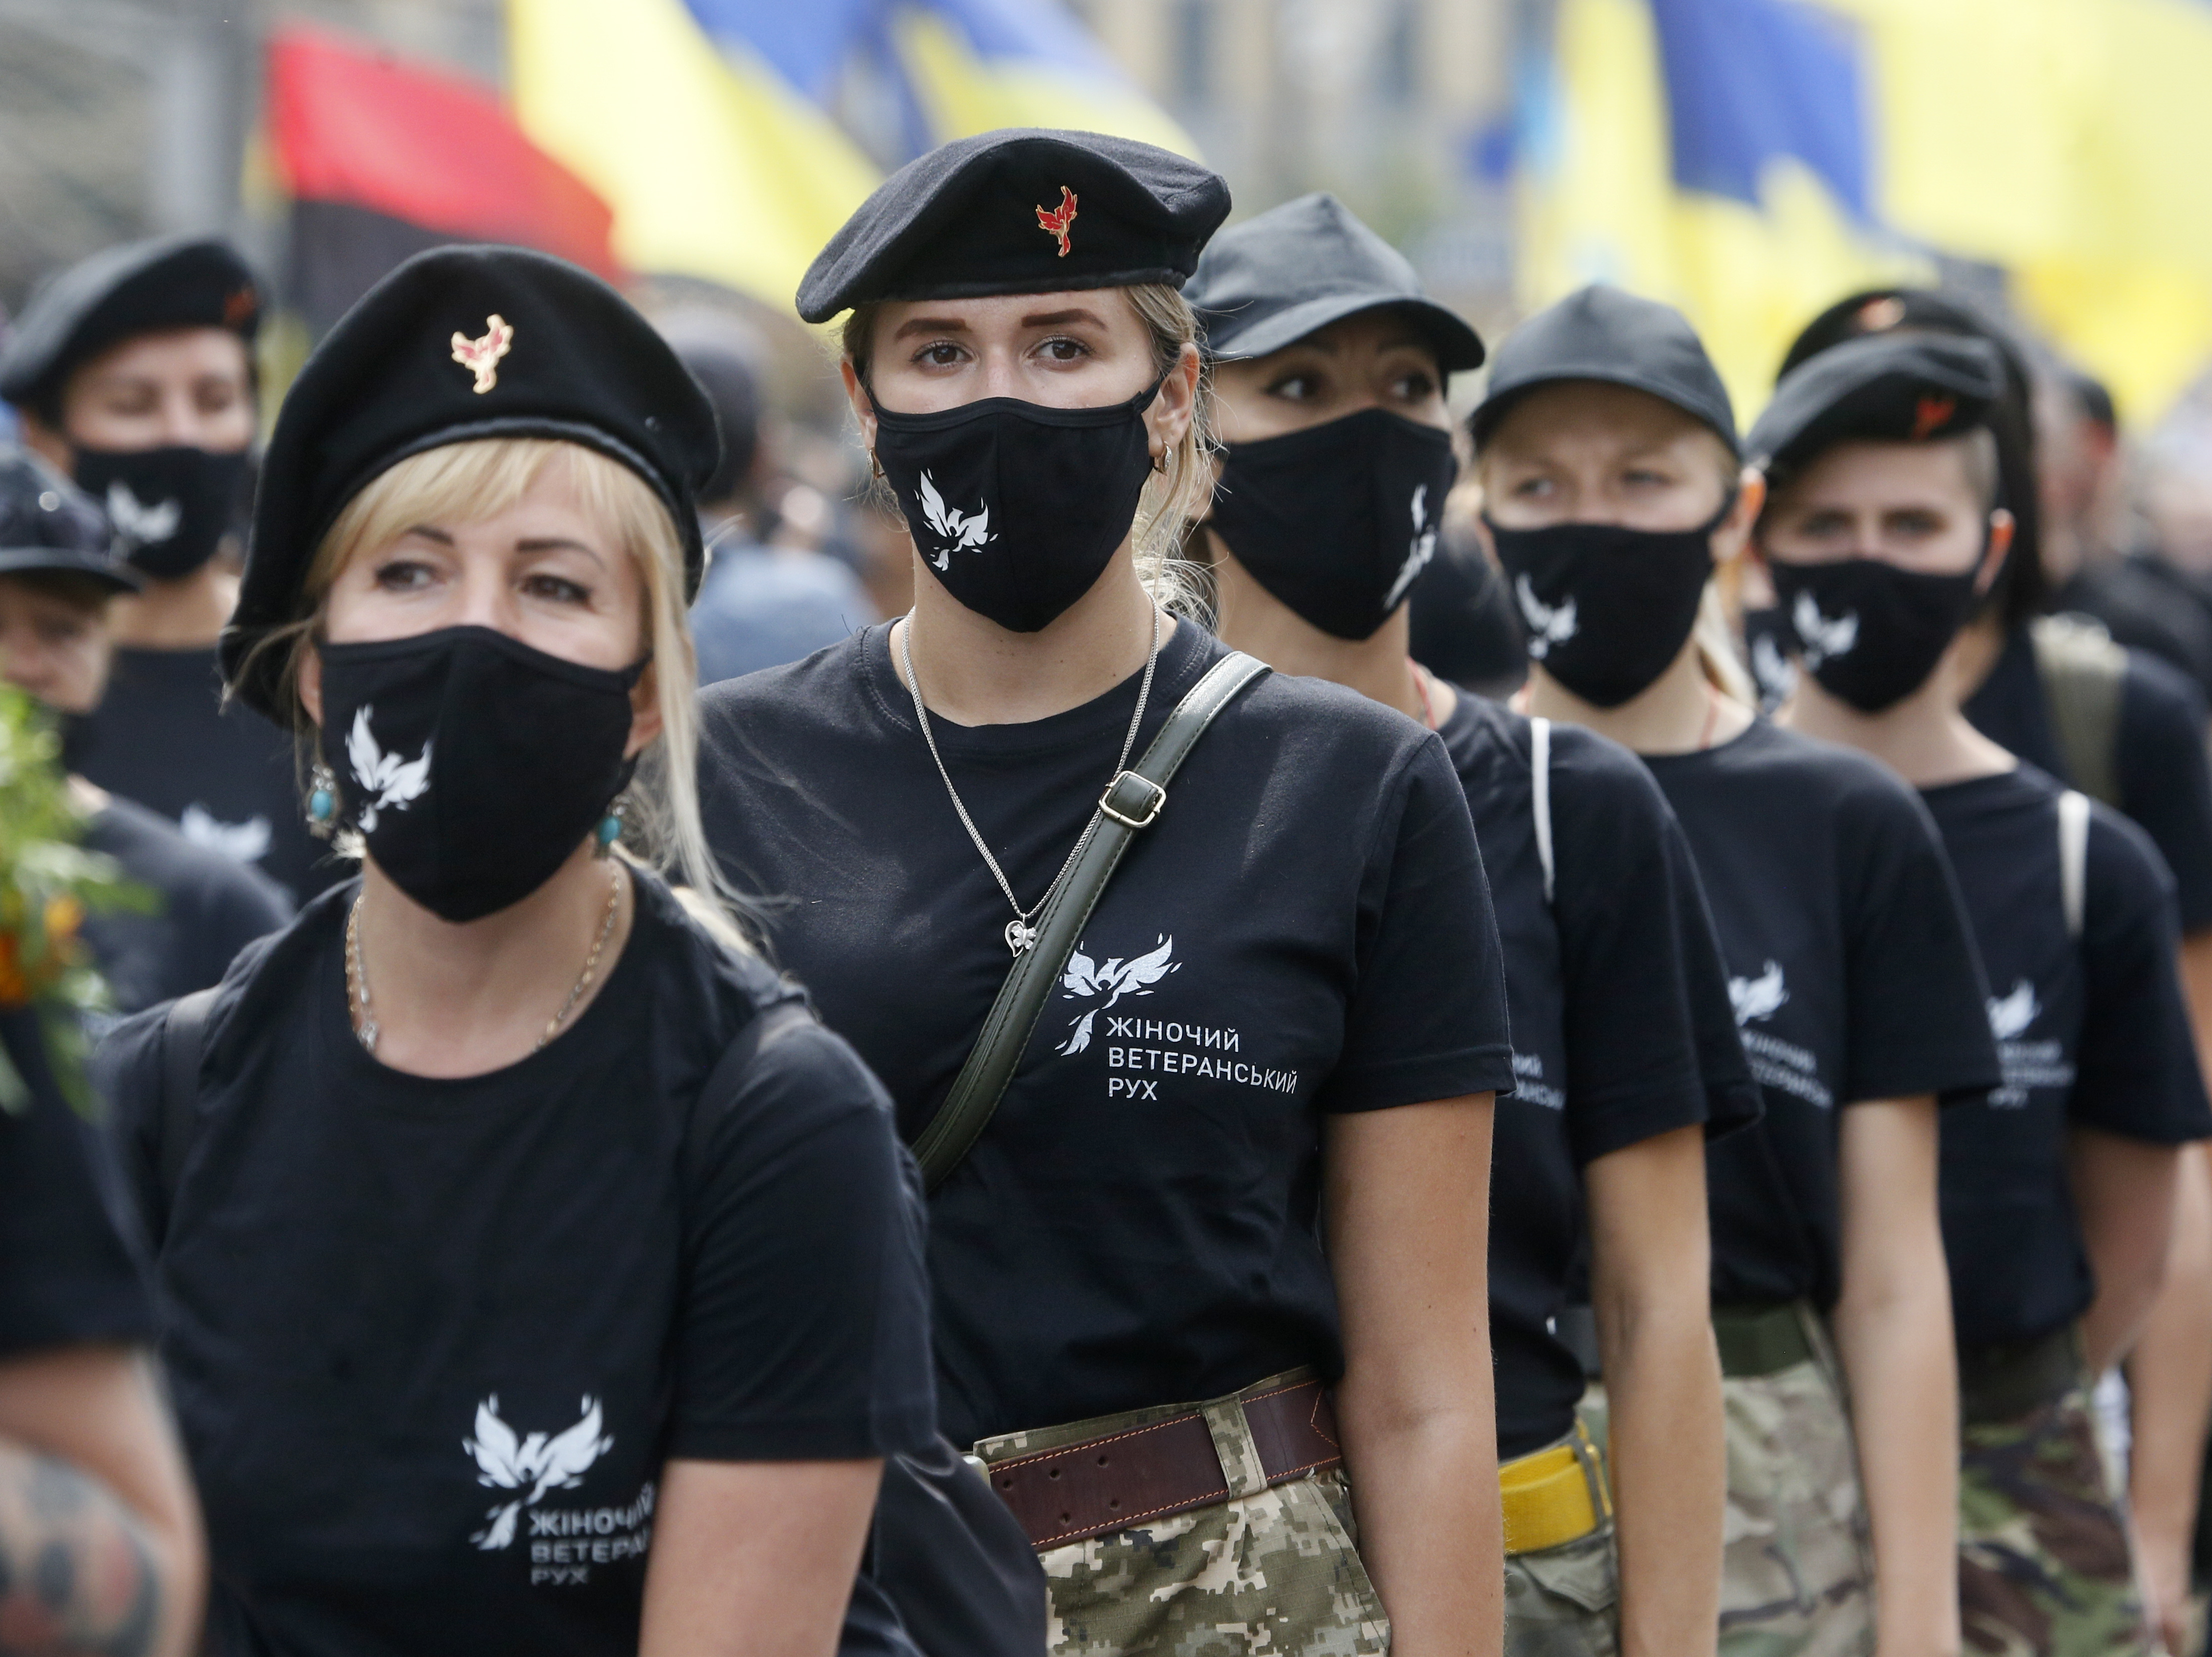 Lobsession chinoise pour les femmes ukrainiennes photo image